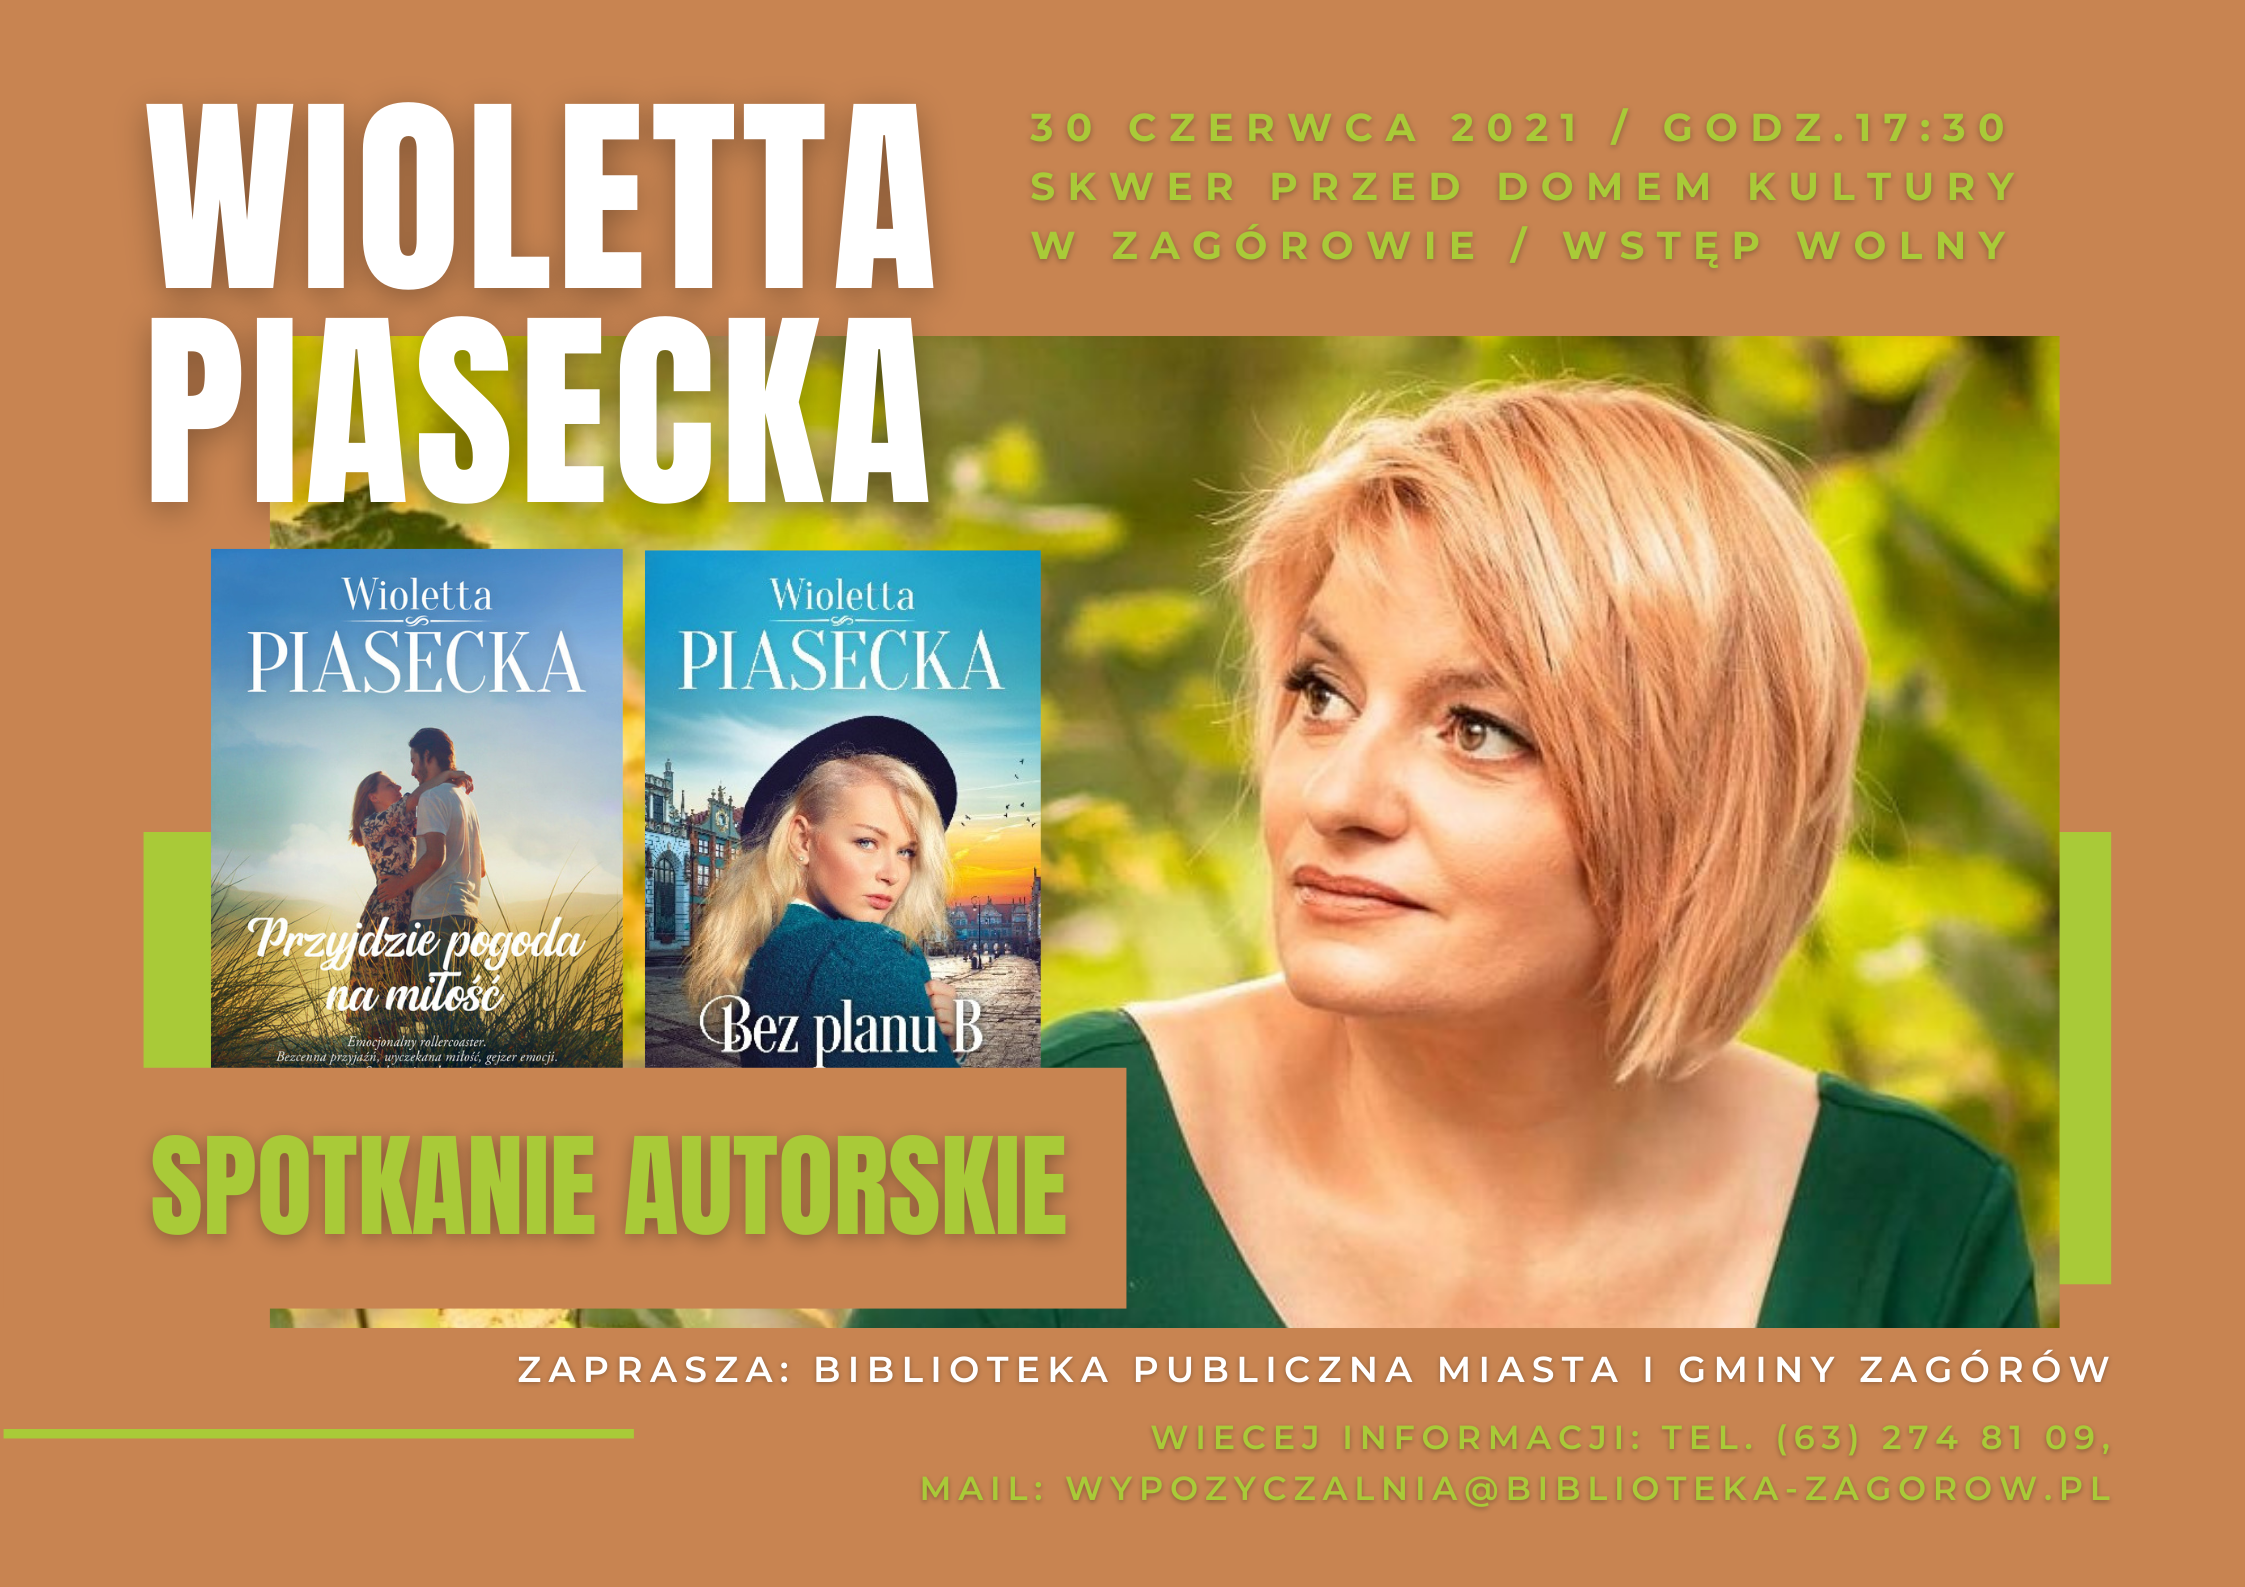 Plakat informujący o spotkaniu autorskim z Wiolettą Piasecką 30czerwca o godzinie 17:30 na skwerze przed budynkiem GOK w Zagórowie. Po prawej okładki dwóch książek pisarki, po lewej zdjęcie portretowe blondynki w średnim wieku w zielonej bluzce.